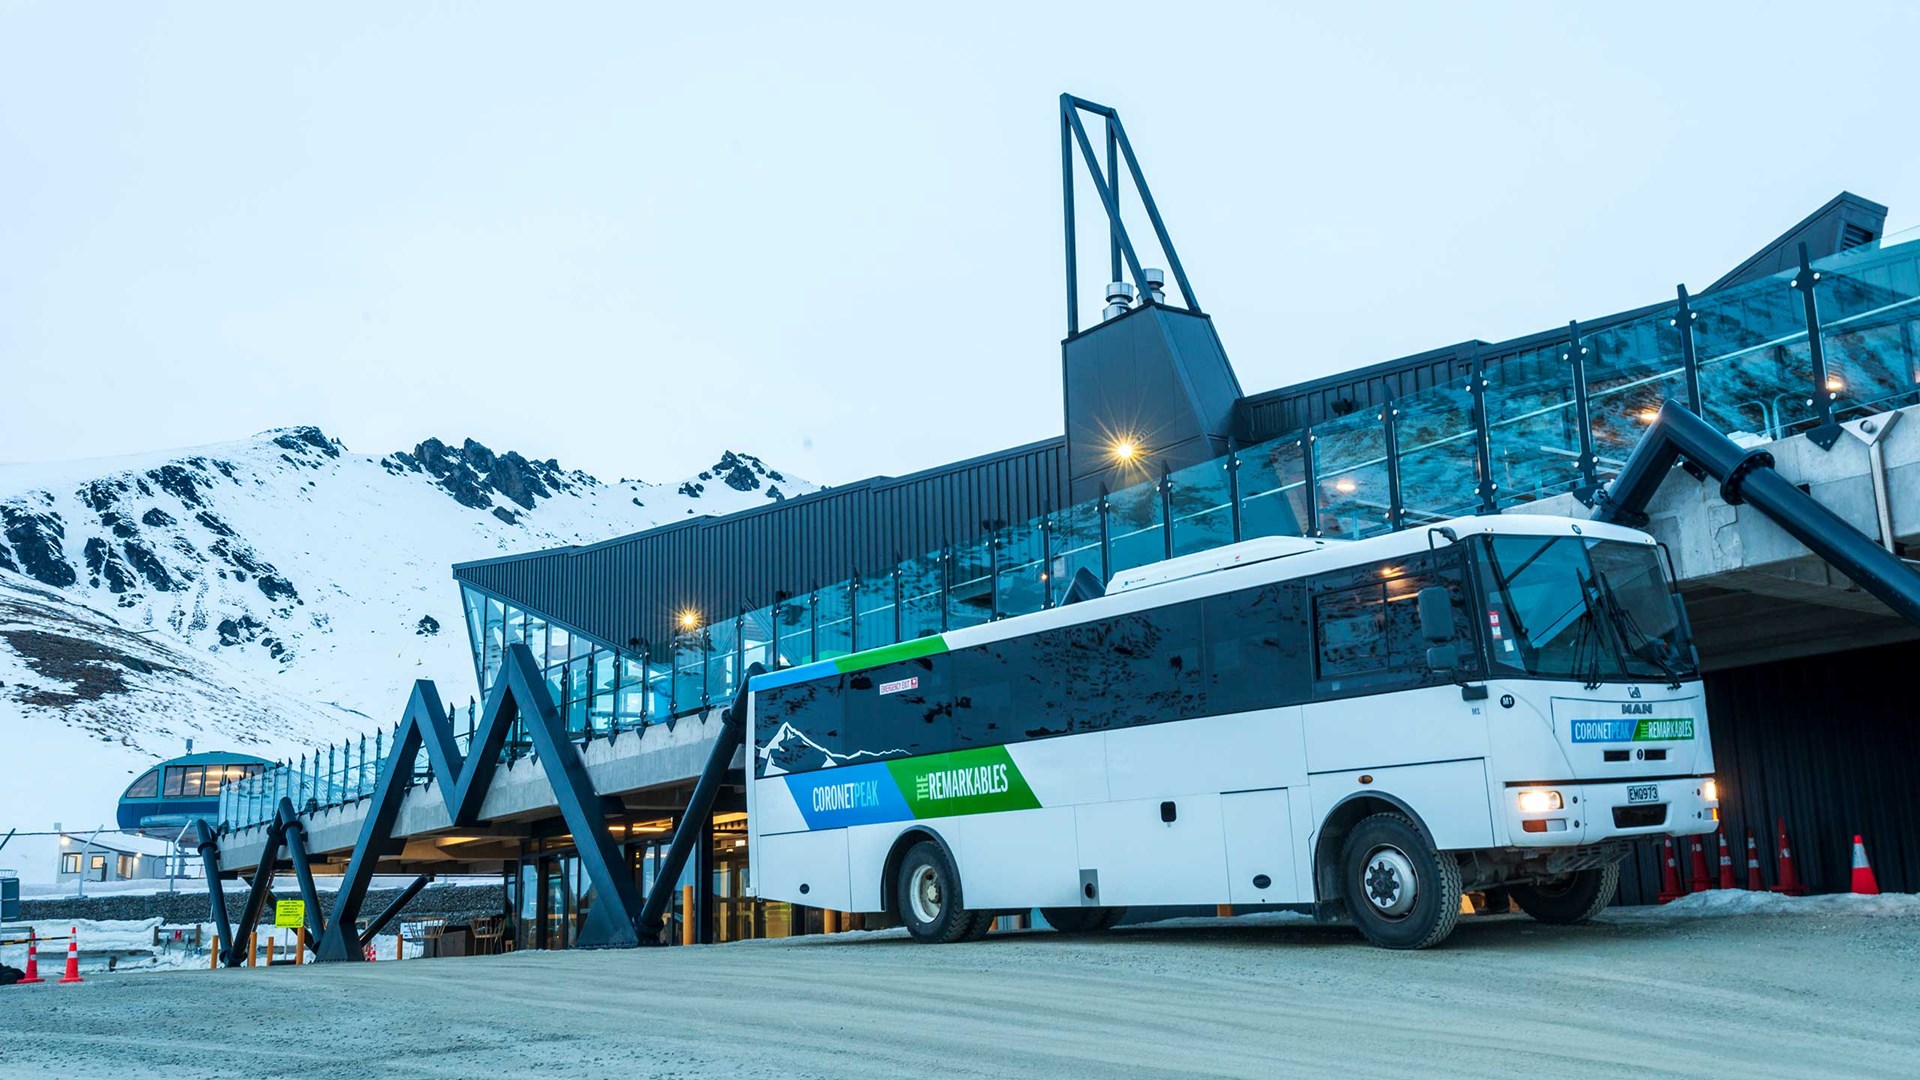 bus trips to ski resorts